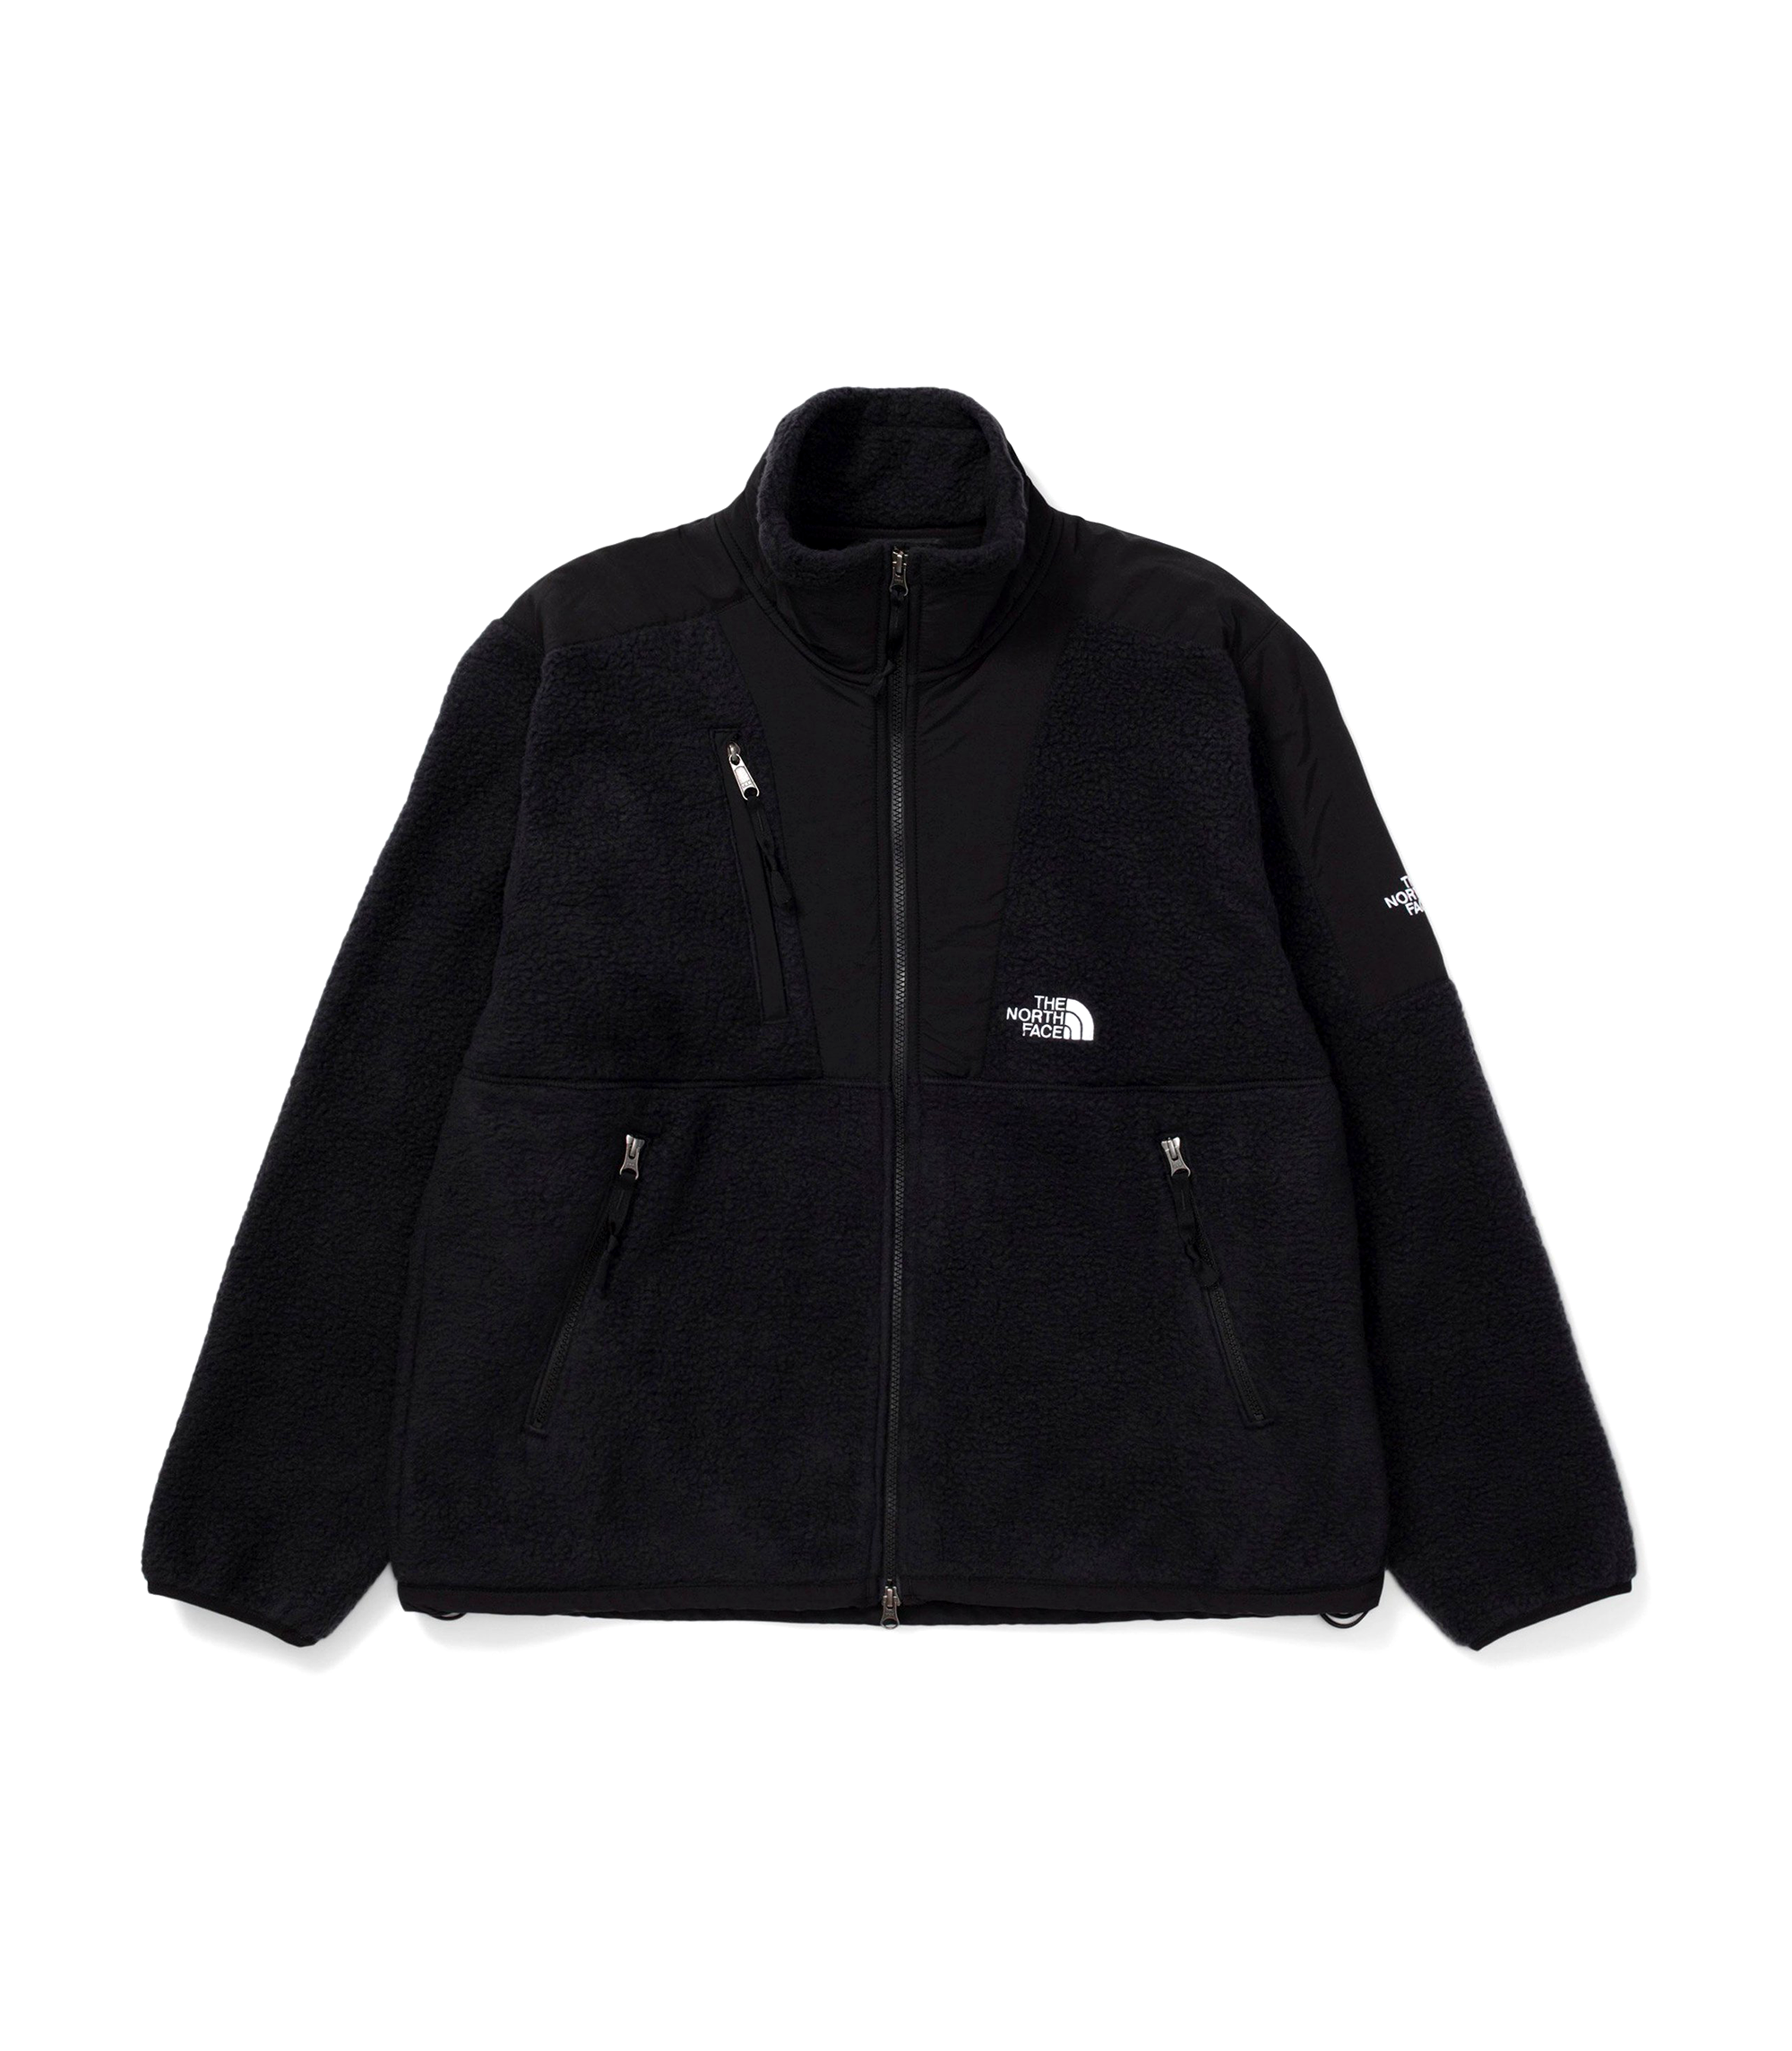 M94 High Pile Denali Winter Jacket - Black